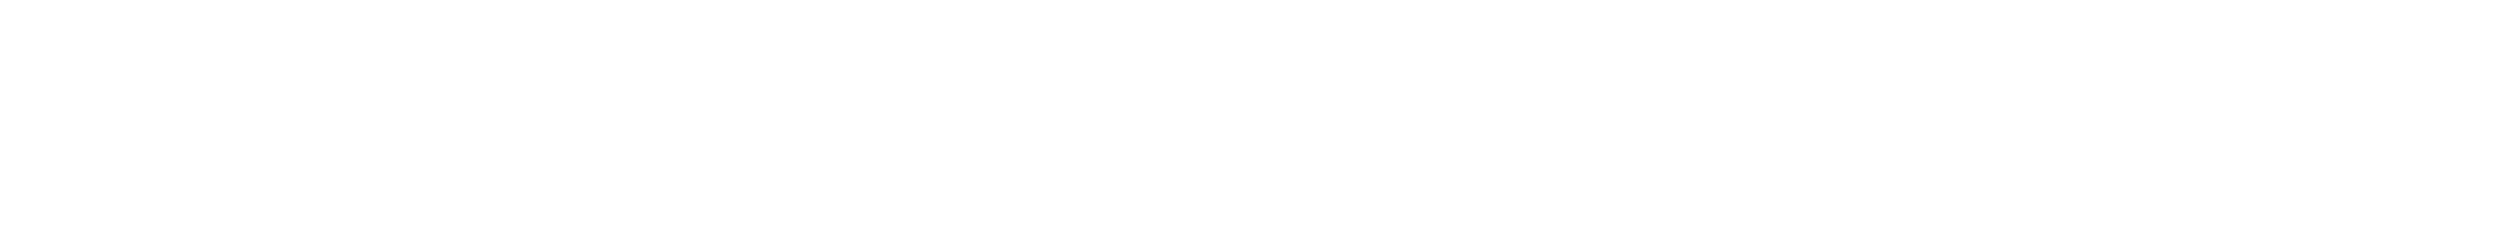 シーシャバー、大人のパブリックのロゴ